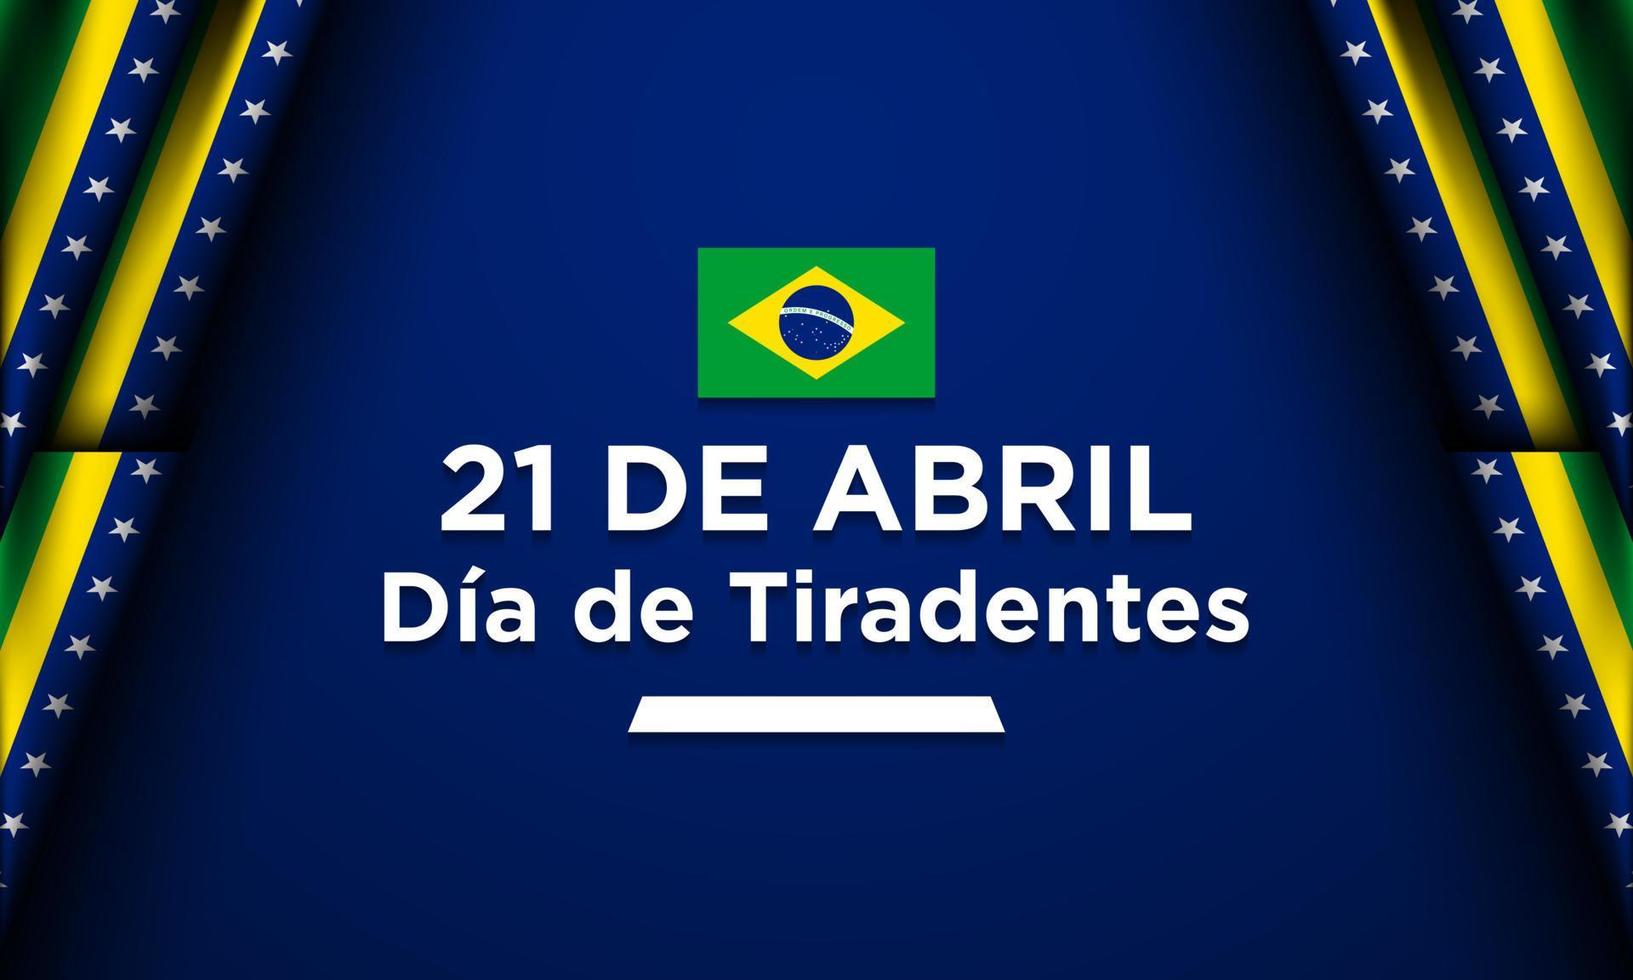 Tiradentes Day Background Design vector